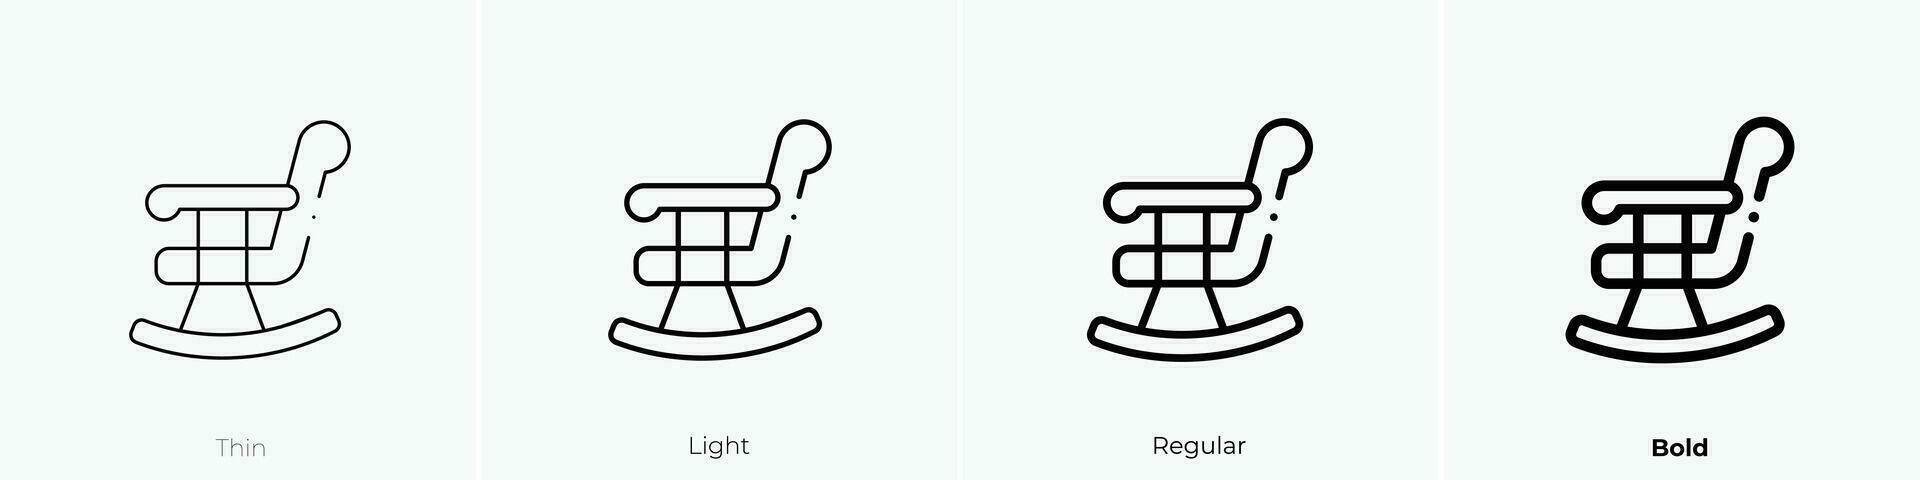 gungande stol ikon. tunn, ljus, regelbunden och djärv stil design isolerat på vit bakgrund vektor